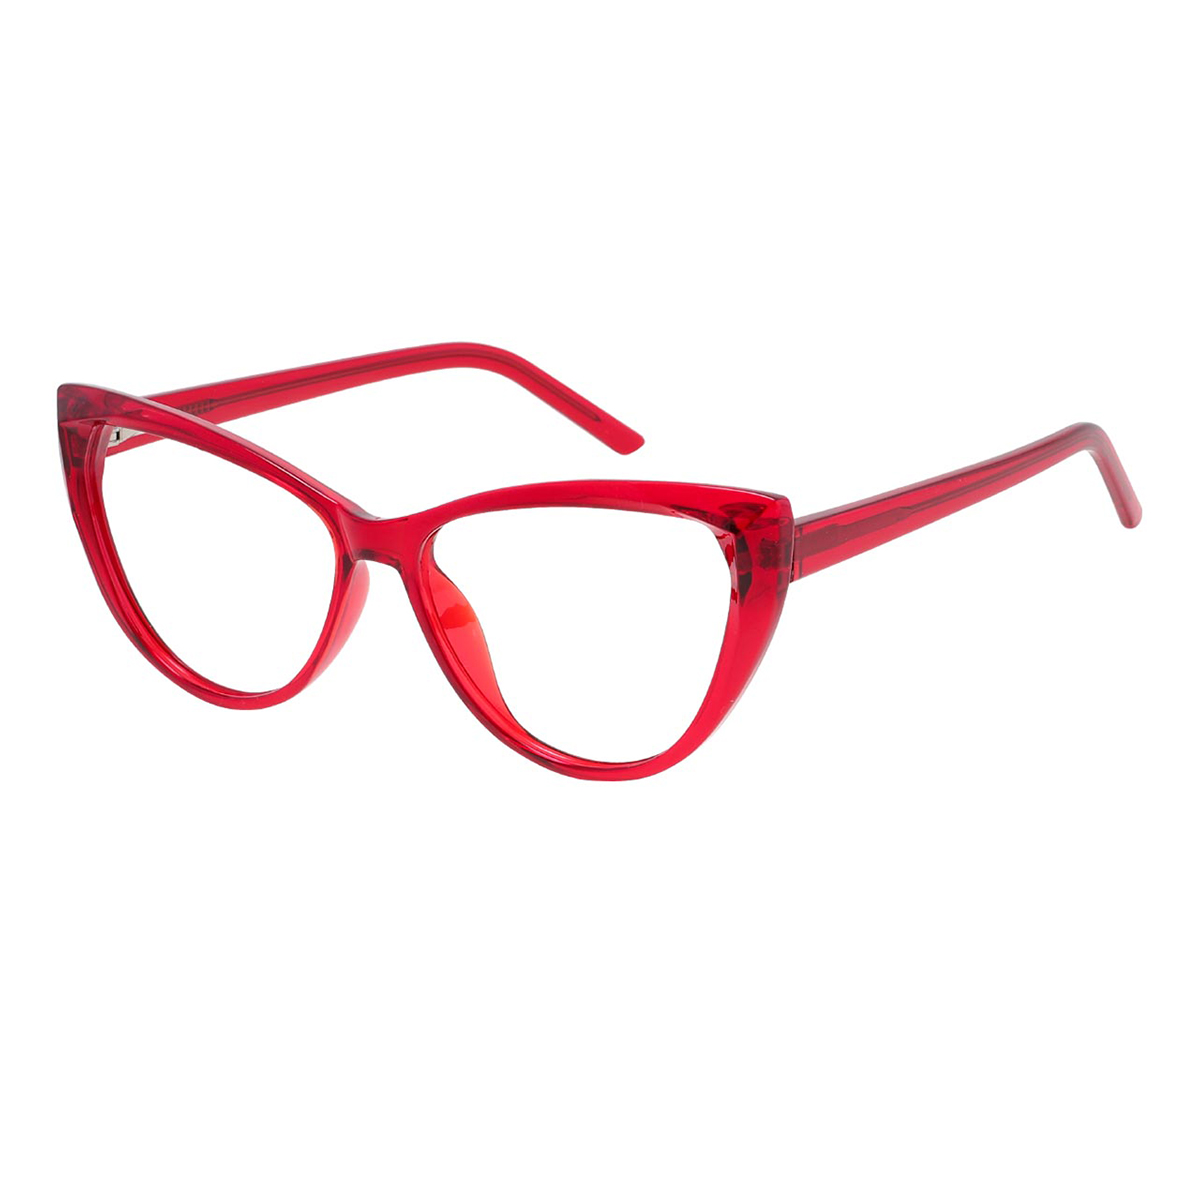 Lottie - Cat-eye Red Reading Glasses for Women